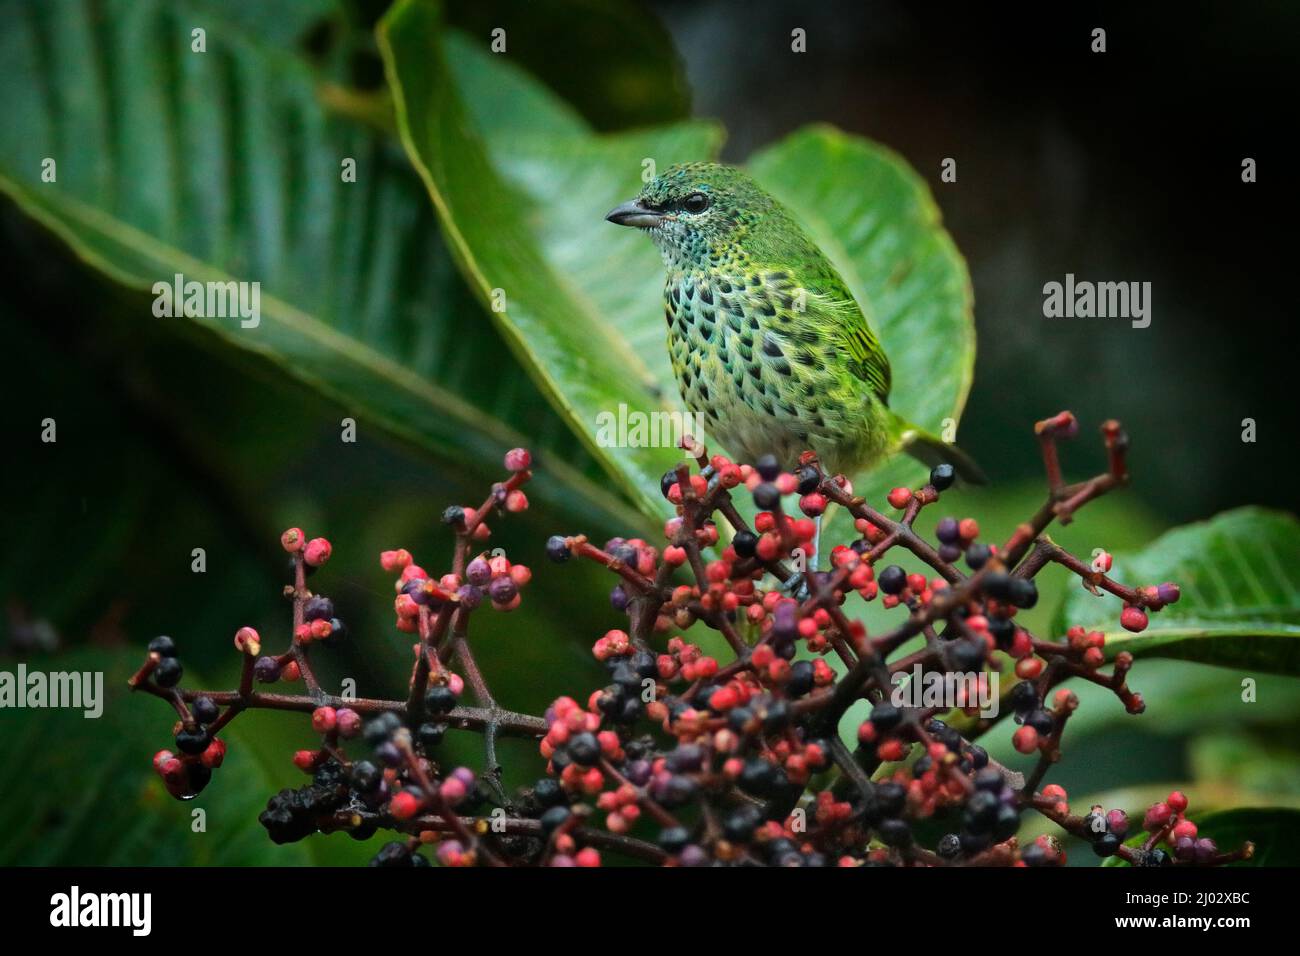 Tanager avvistato, Ixothraupis punctata, uccello seduto sull'albero della frutta nella foresta tropicale, Sumaco in Ecuador. Birdwatching nel Sud America. Tana Foto Stock